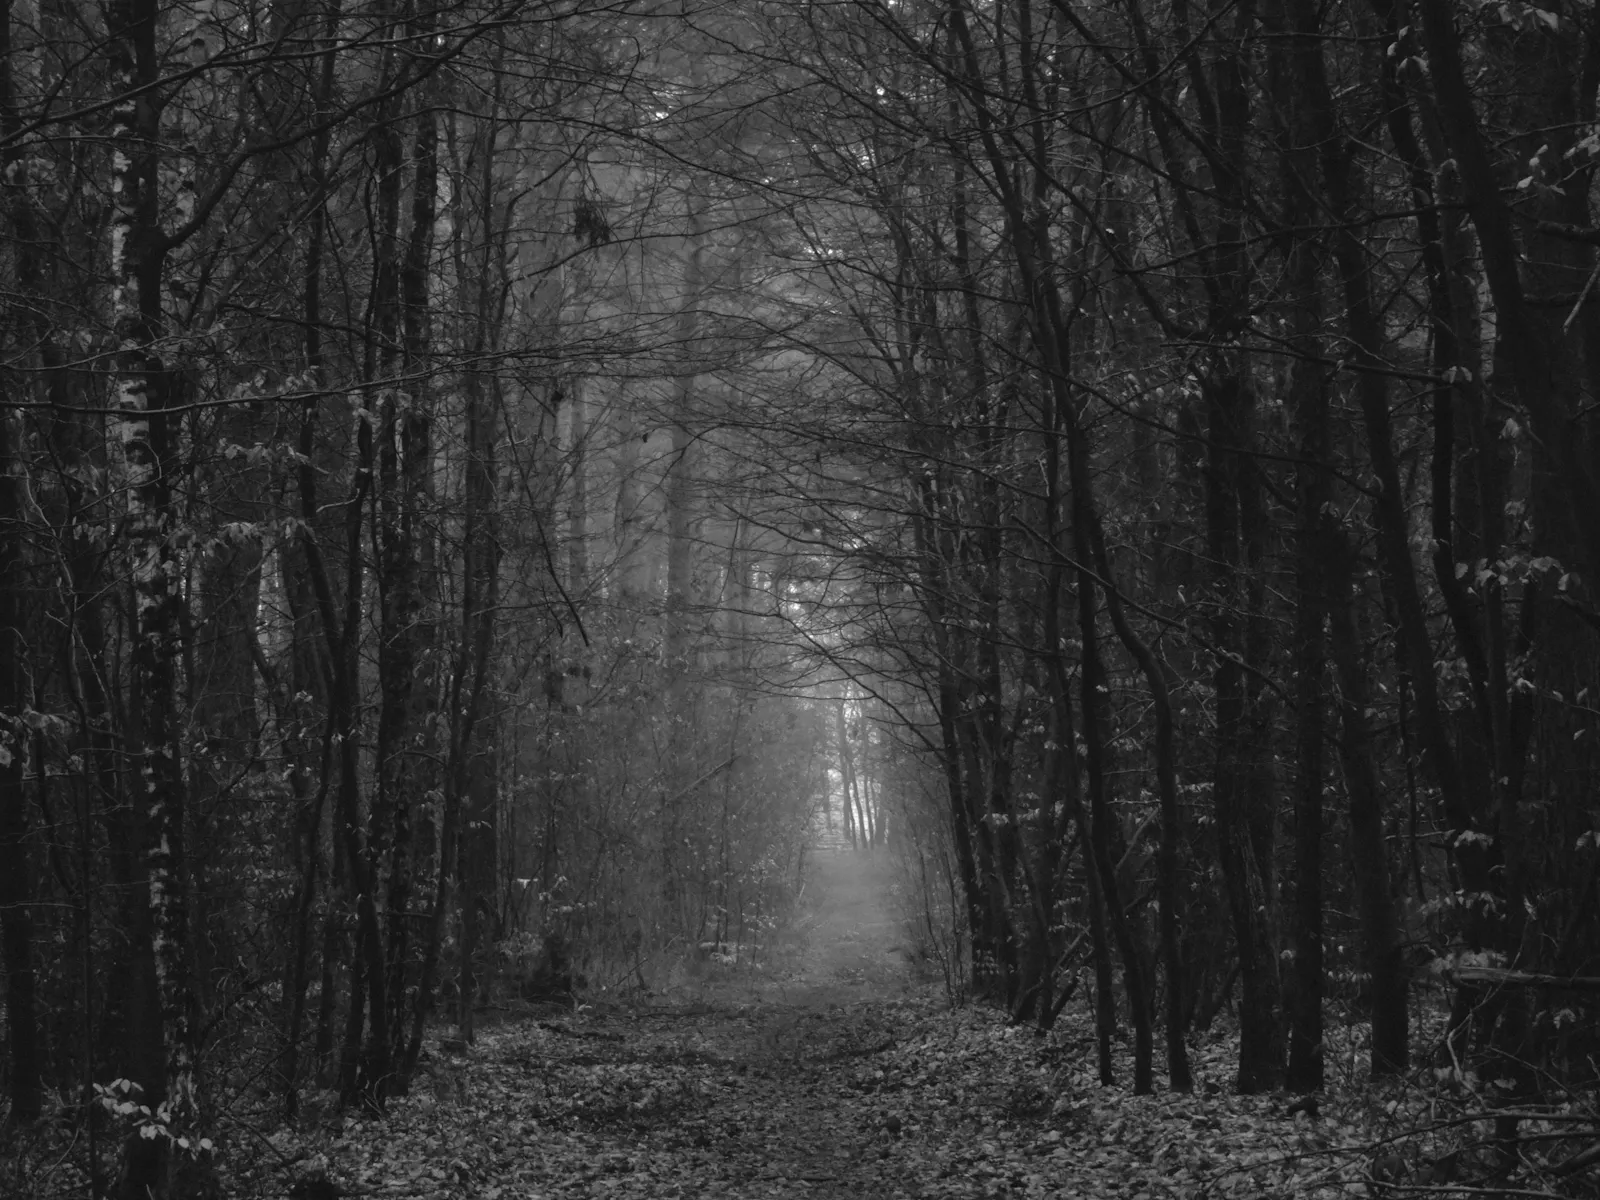 Schwarz-weiß Foto von einem Waldweg im Winter. Links und rechts stehen kaum begrünte Bäume, der Weg ist mit Laub bedeckt.